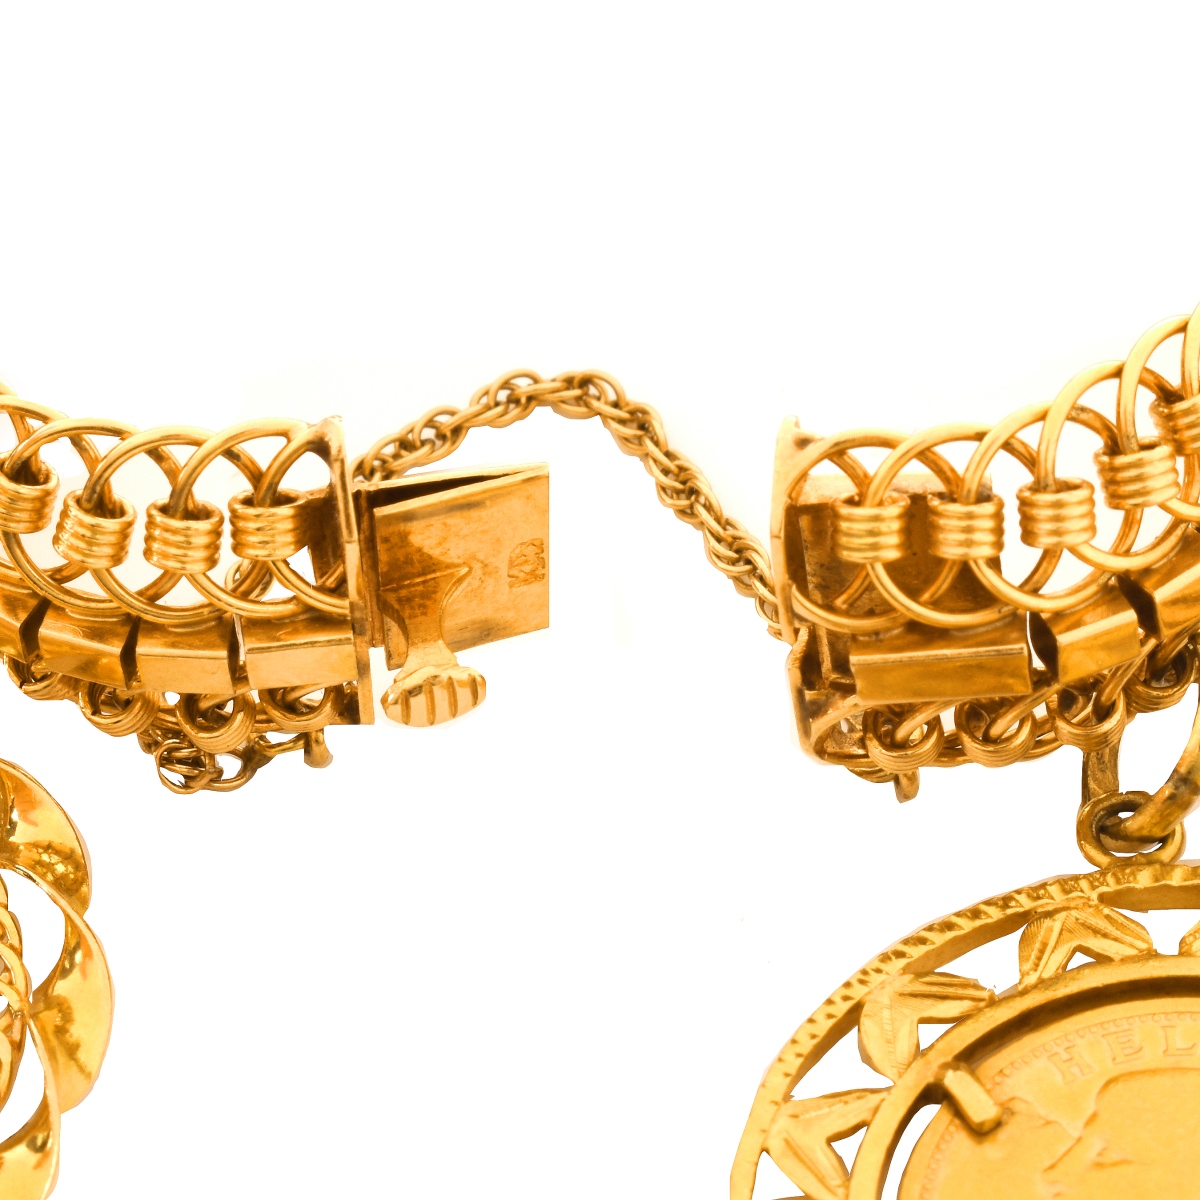 Vintage Gold Coin Charm Bracelet - Image 4 of 6